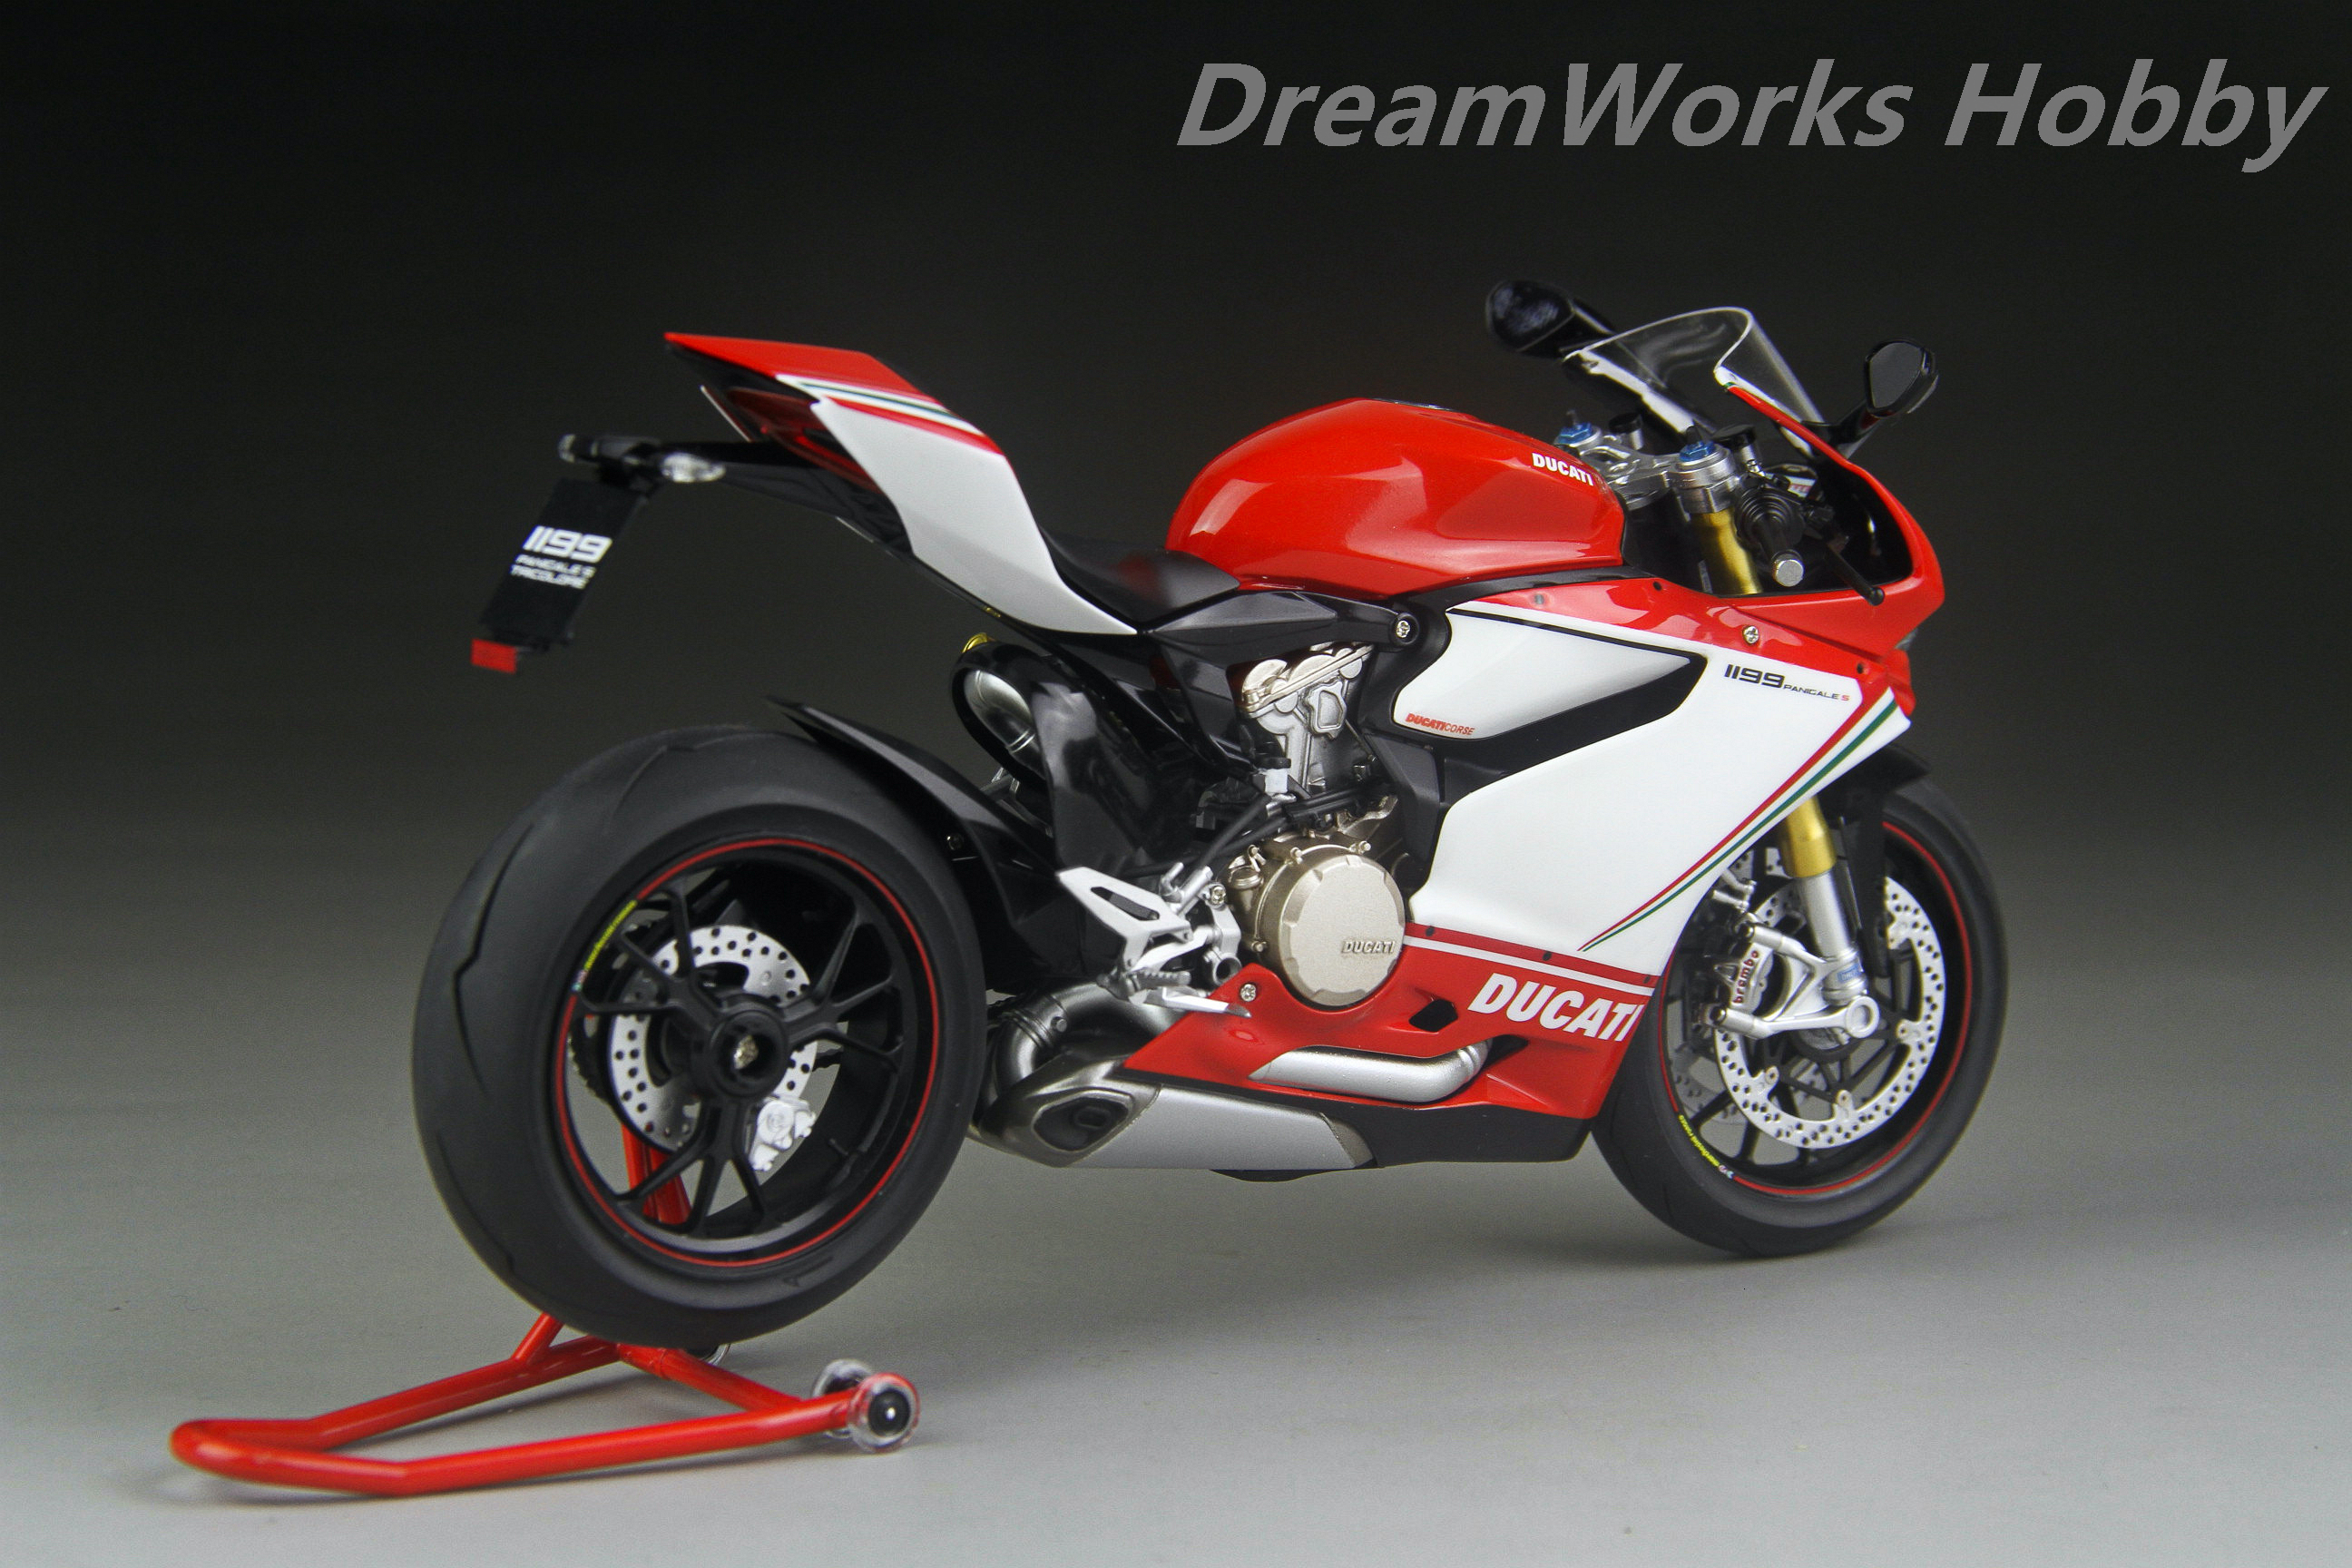 Maquette moto : Ducati 1199 Panigale Tricolore - Jeux et jouets Tamiya -  Avenue des Jeux